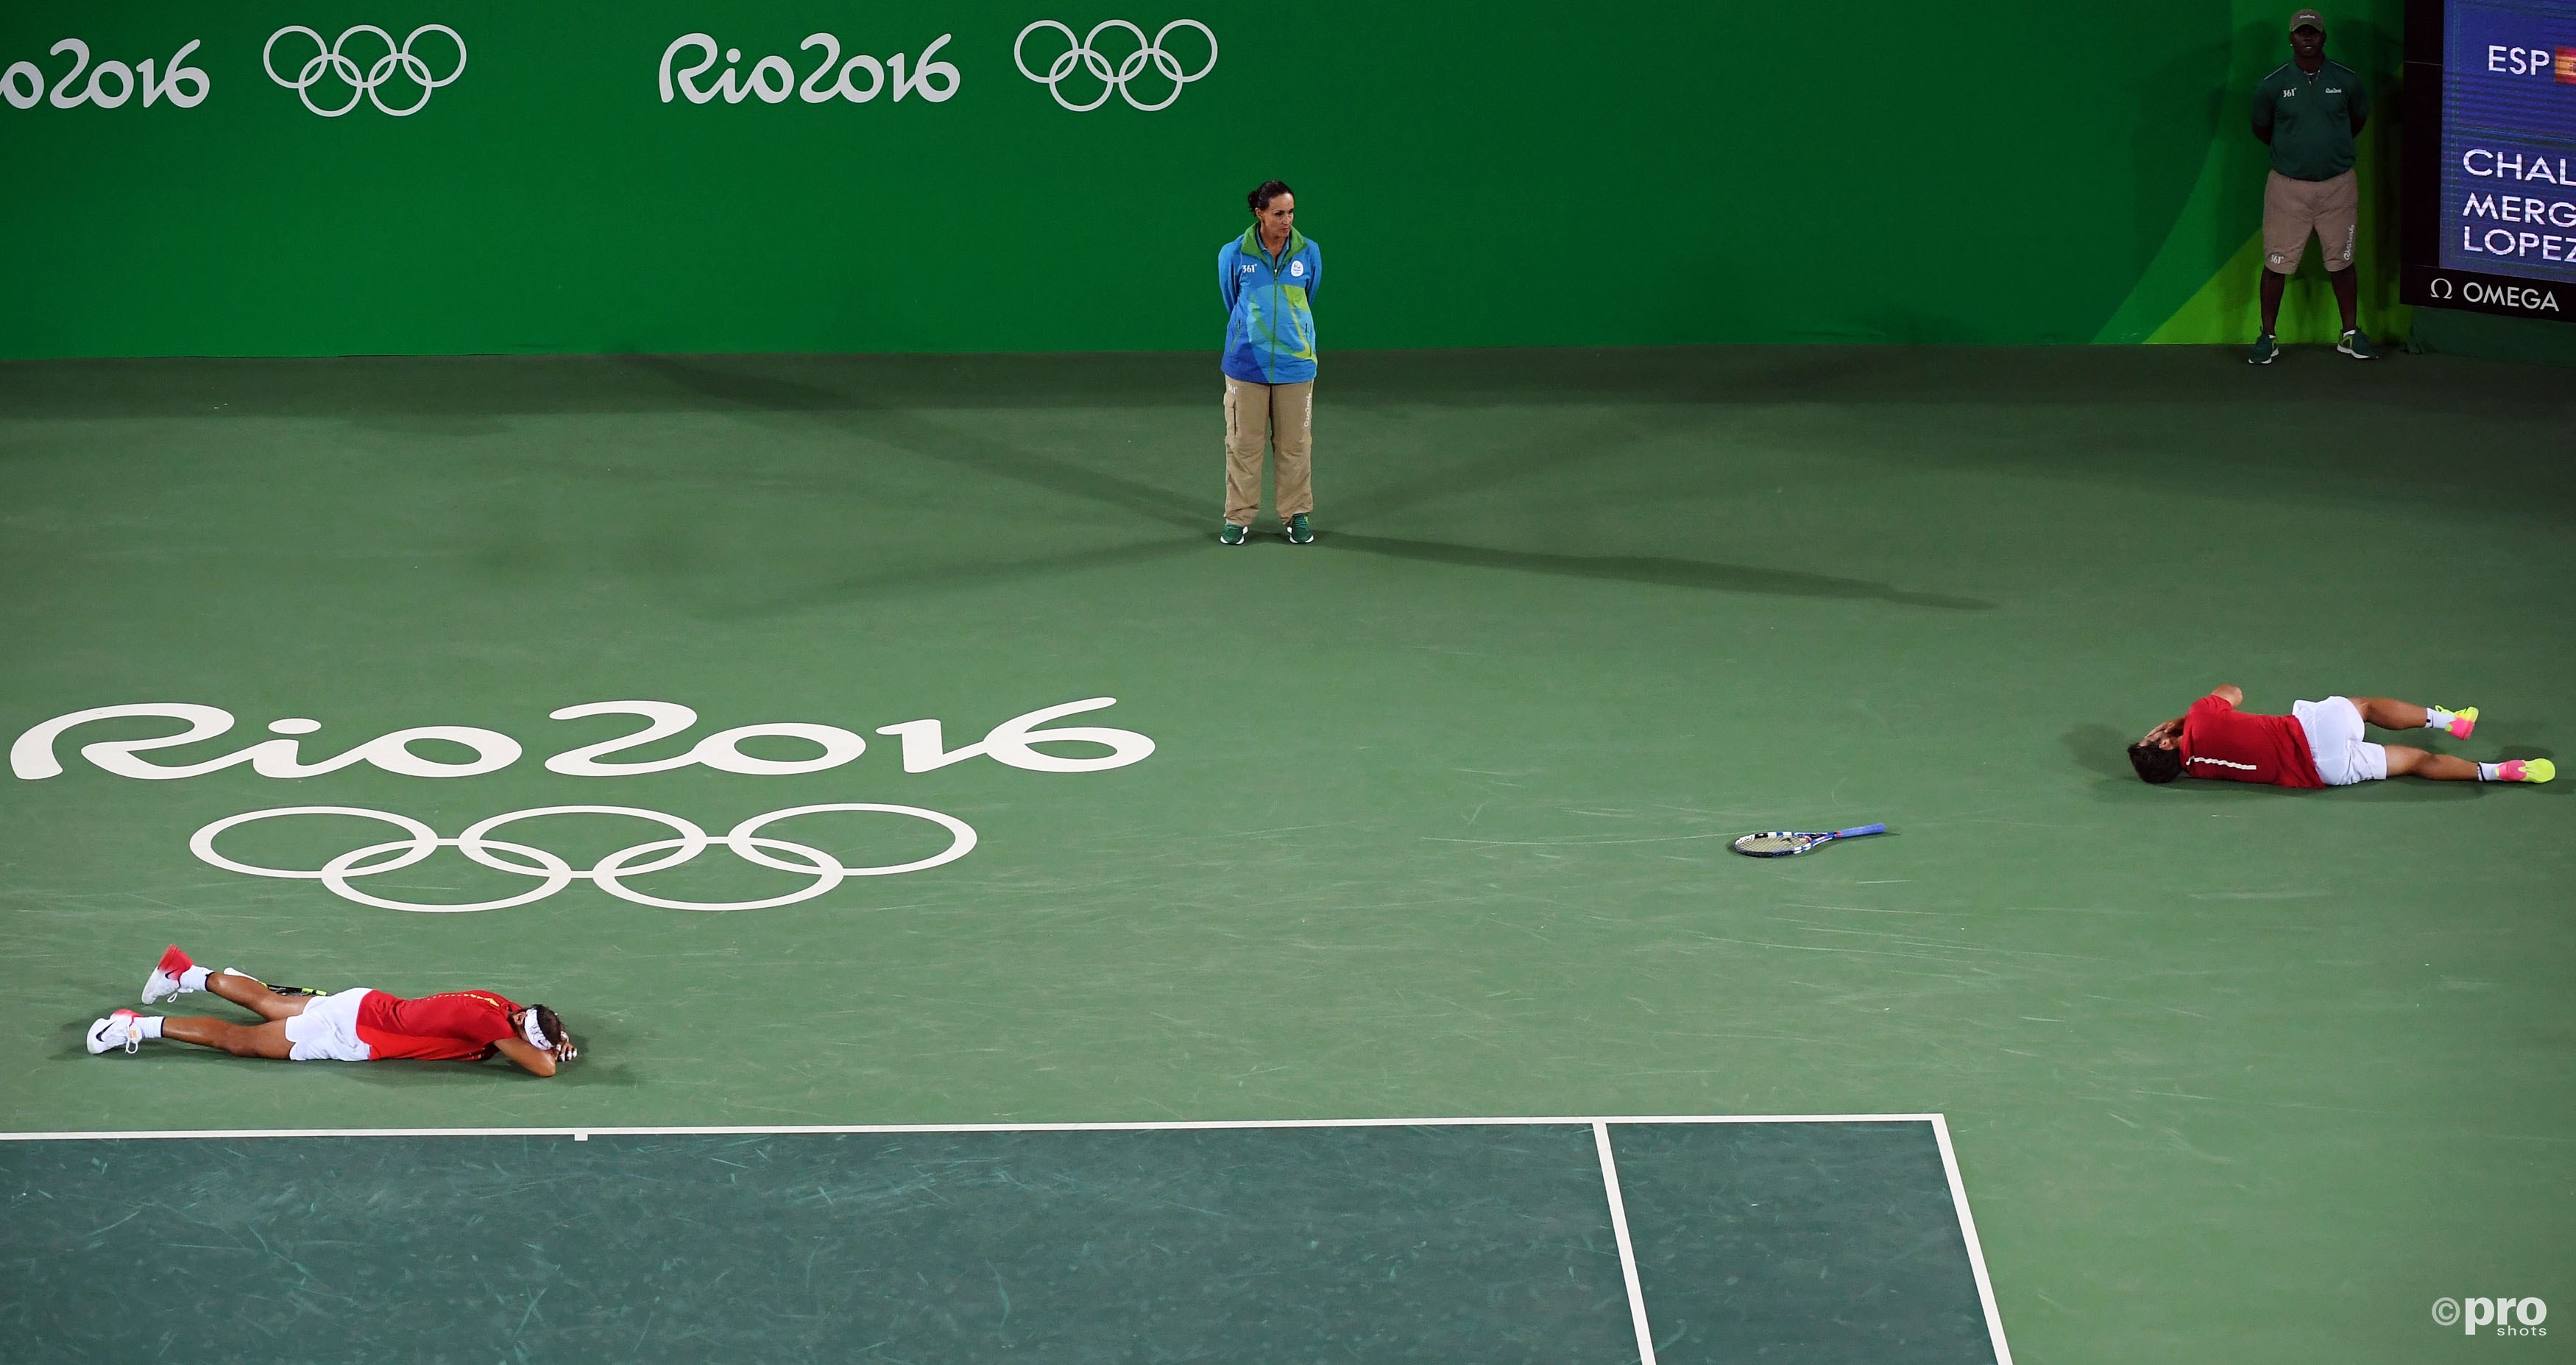 Nadal en Lopez vallen compleet uitgeput naar de grond nadat het goud binnen was (PROSHOTS/Action Images)